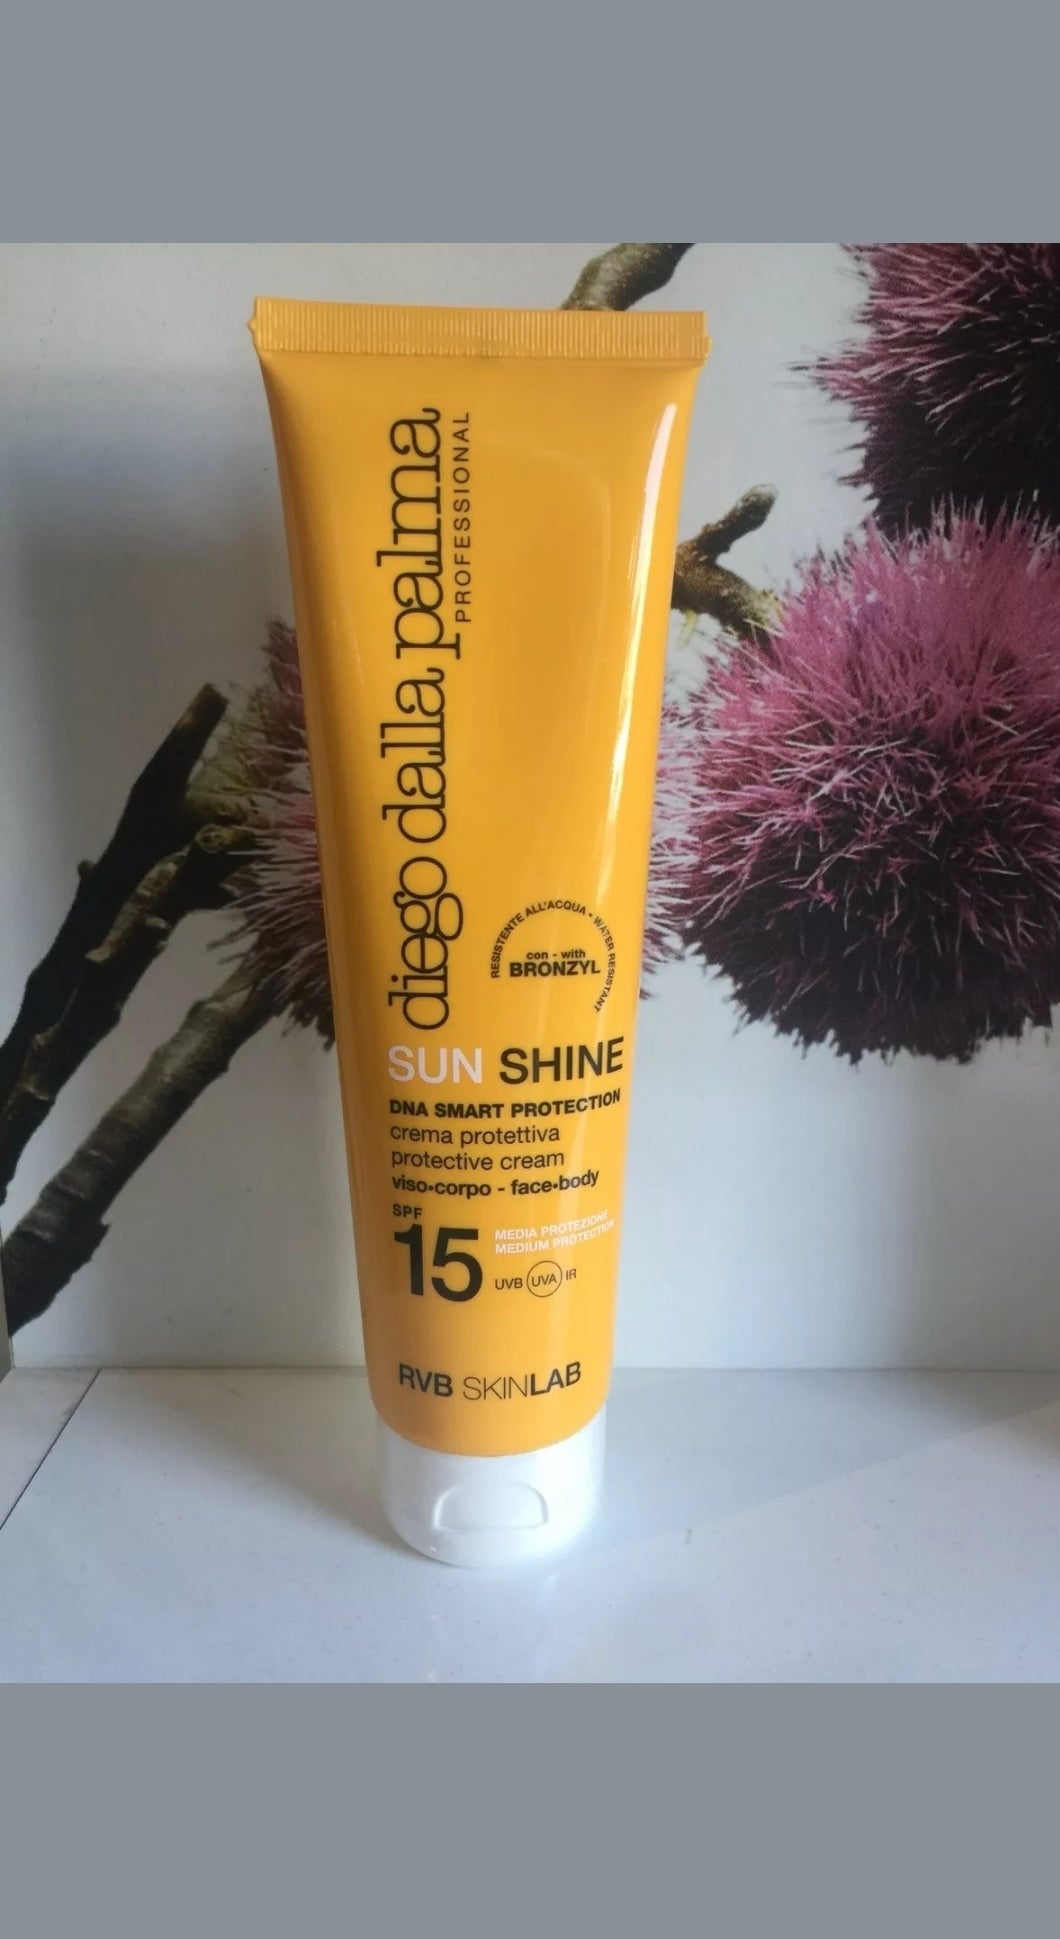 Sun Shine Crema Protettiva viso corpo spf 15 150 ml